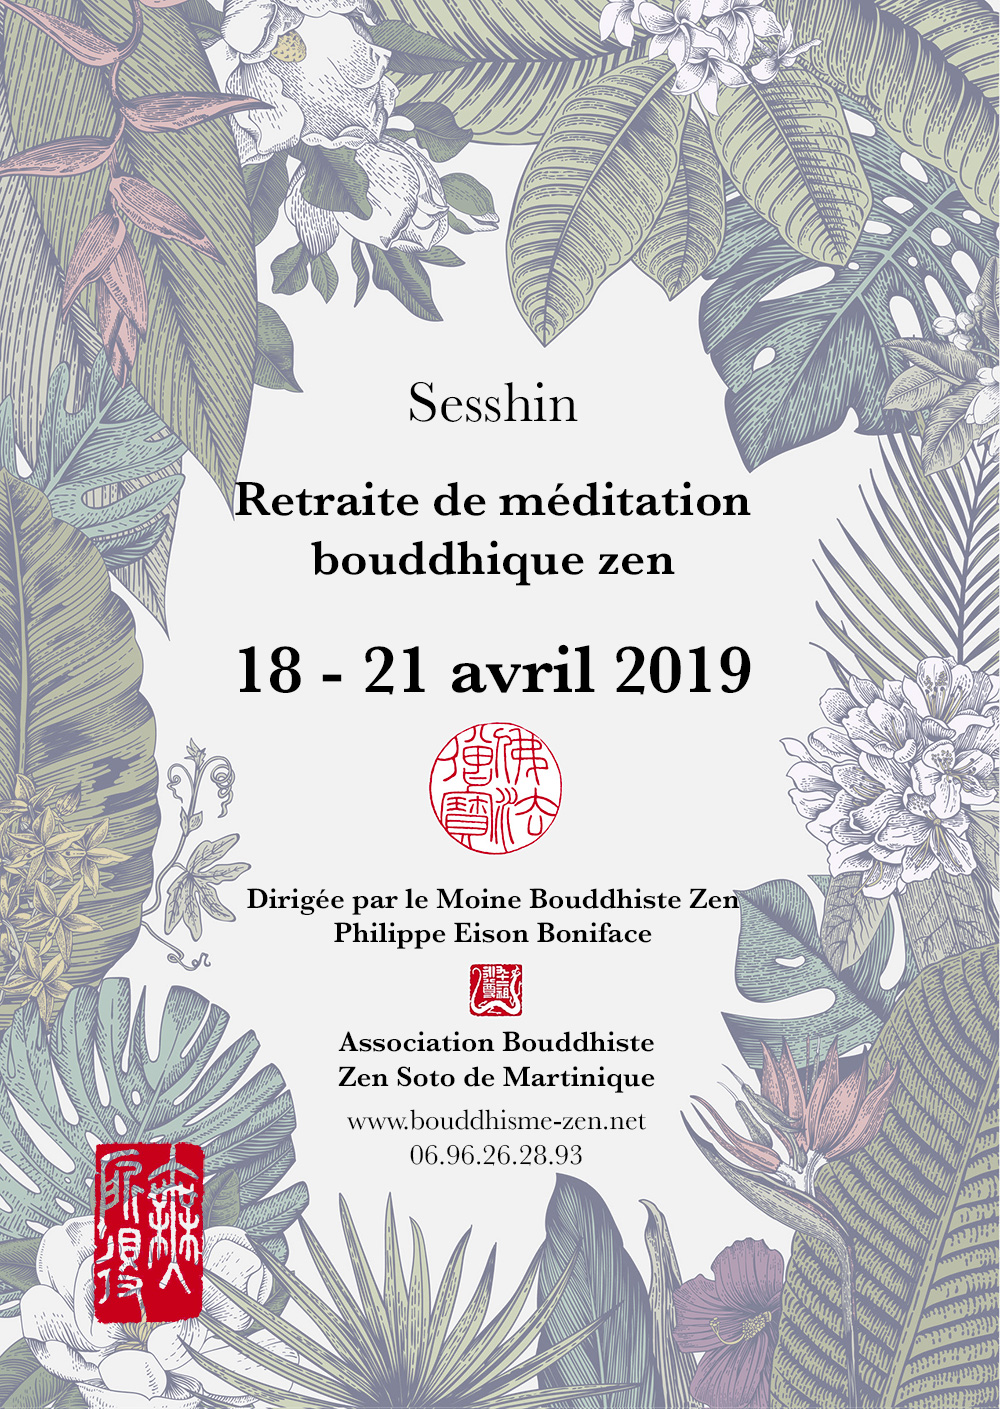 Sesshin d' Avril 2019 - Retraite de méditation bouddhiste Zen - du 18 avril au 21 avril 2019 - dirigée par Philippe Eison Boniface